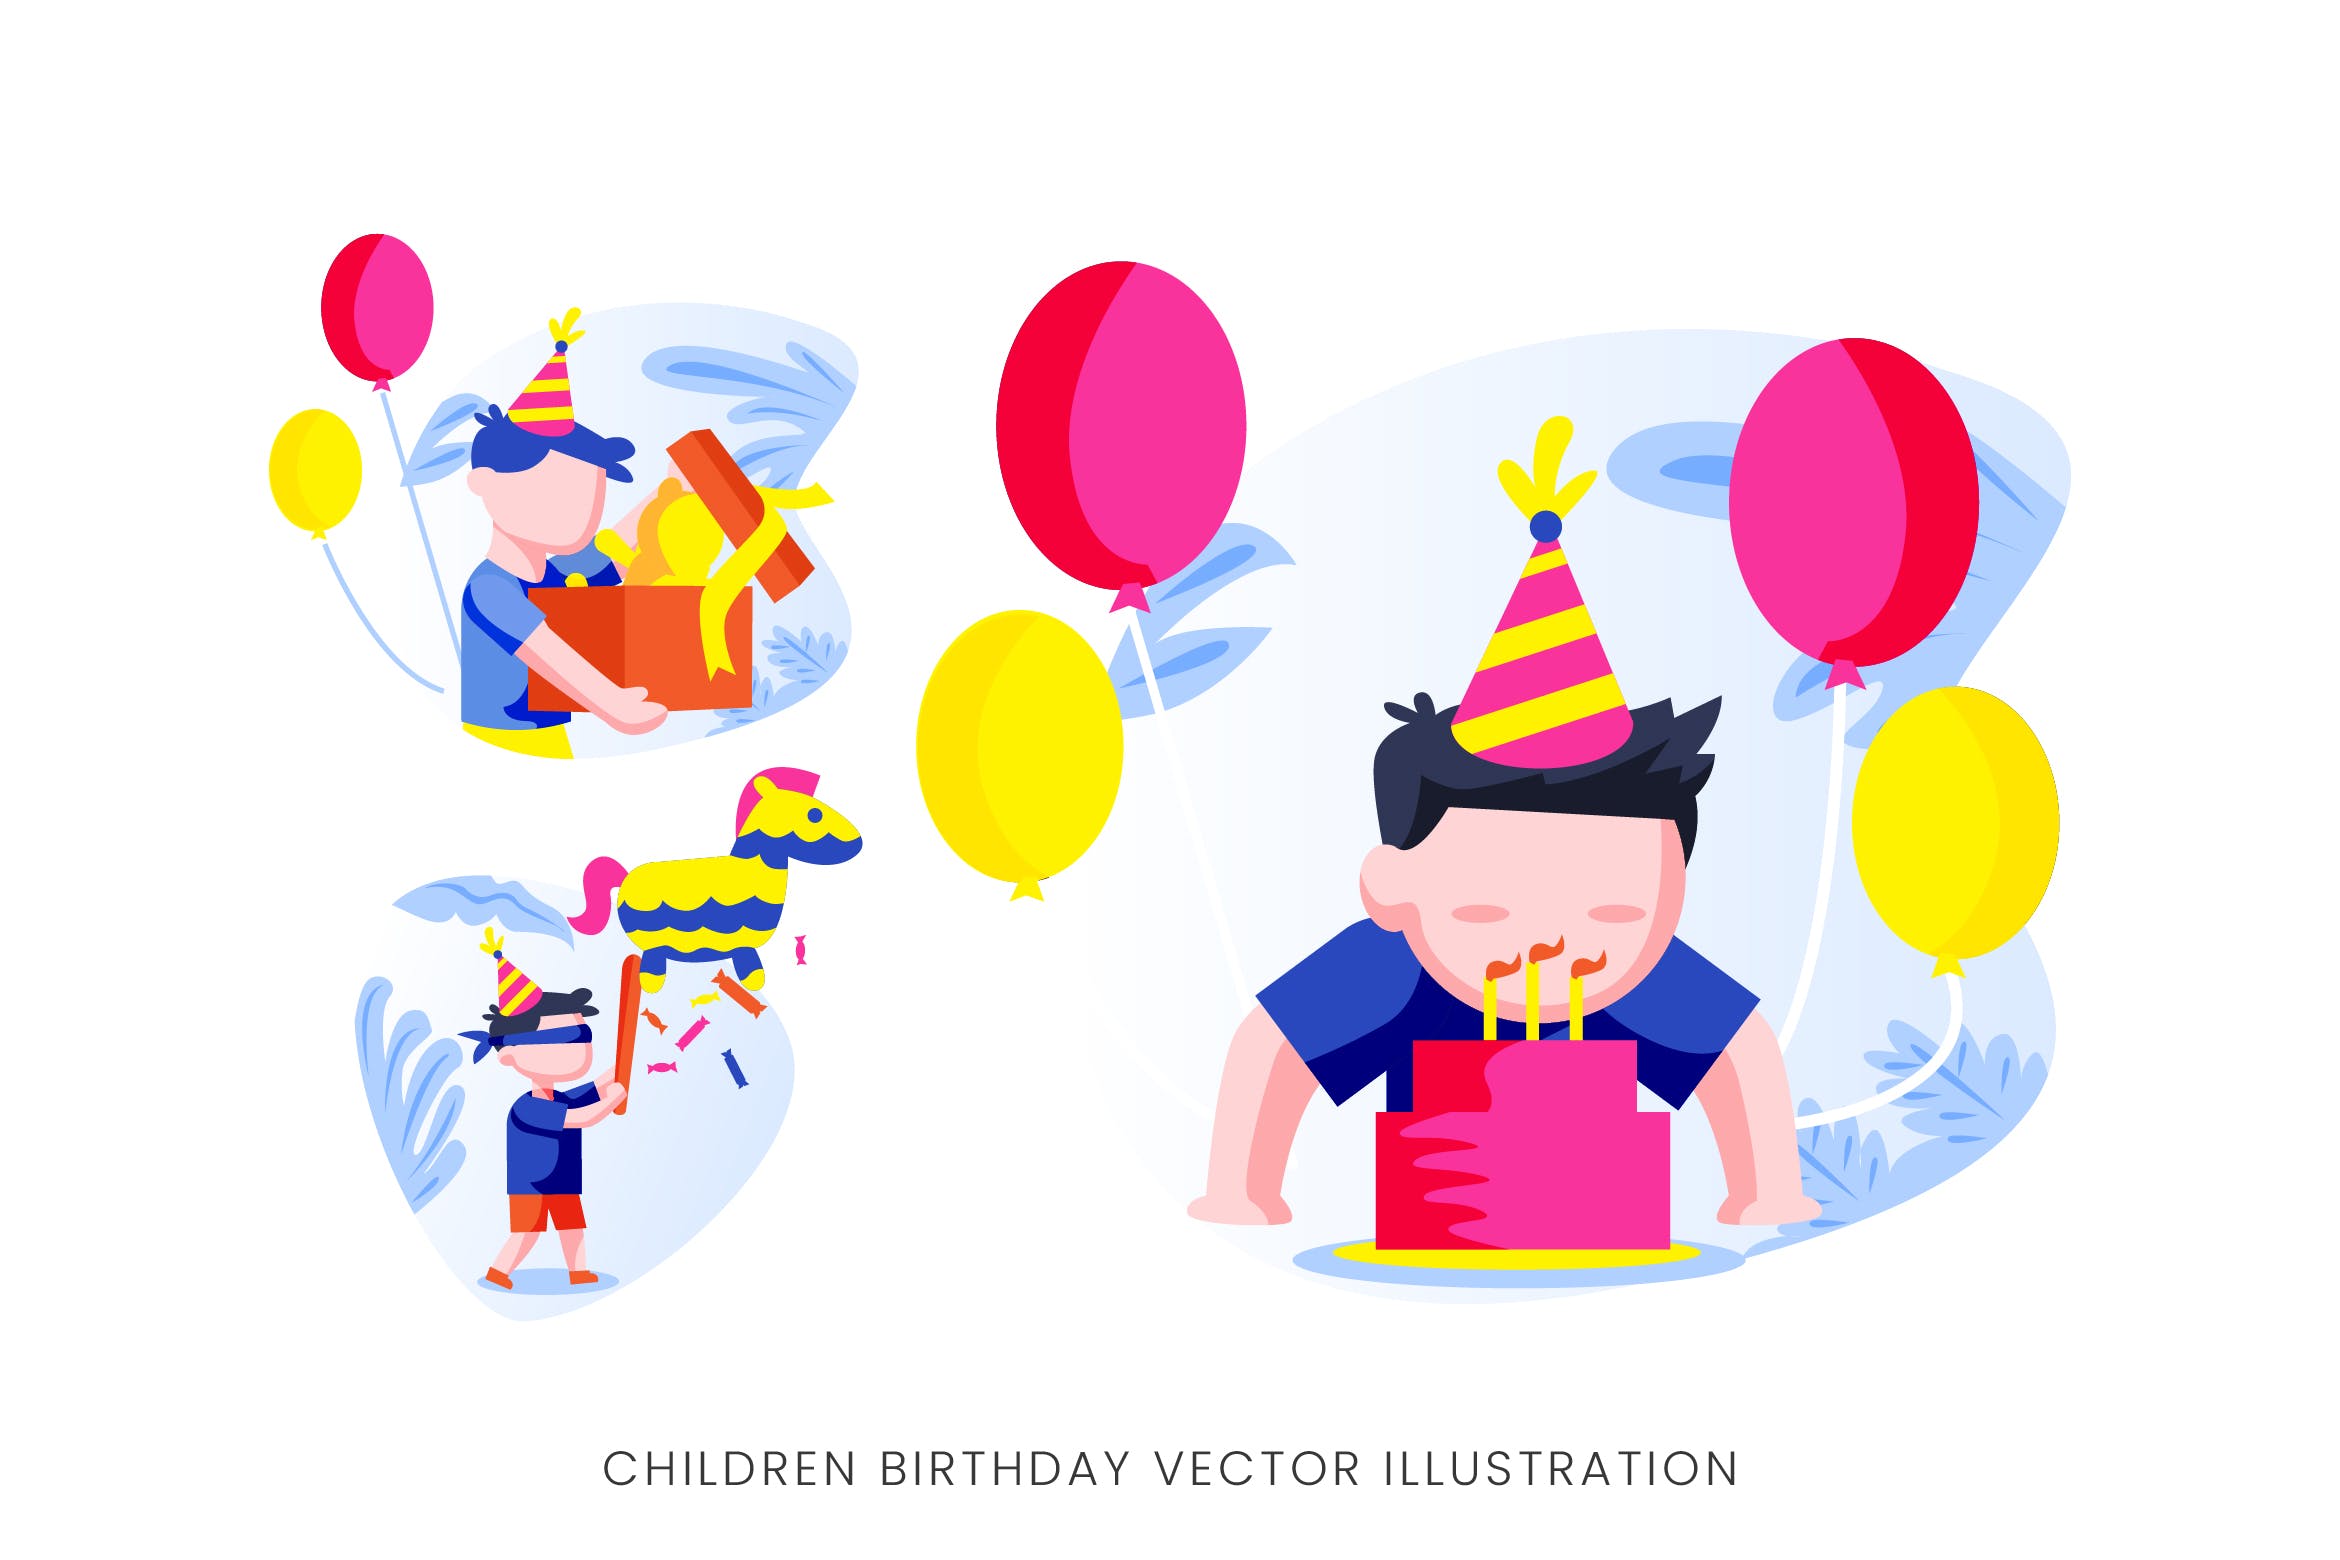 儿童生日派对人物形象非凡图库精选手绘插画矢量素材 Children Birthday Party Vector Character Set插图